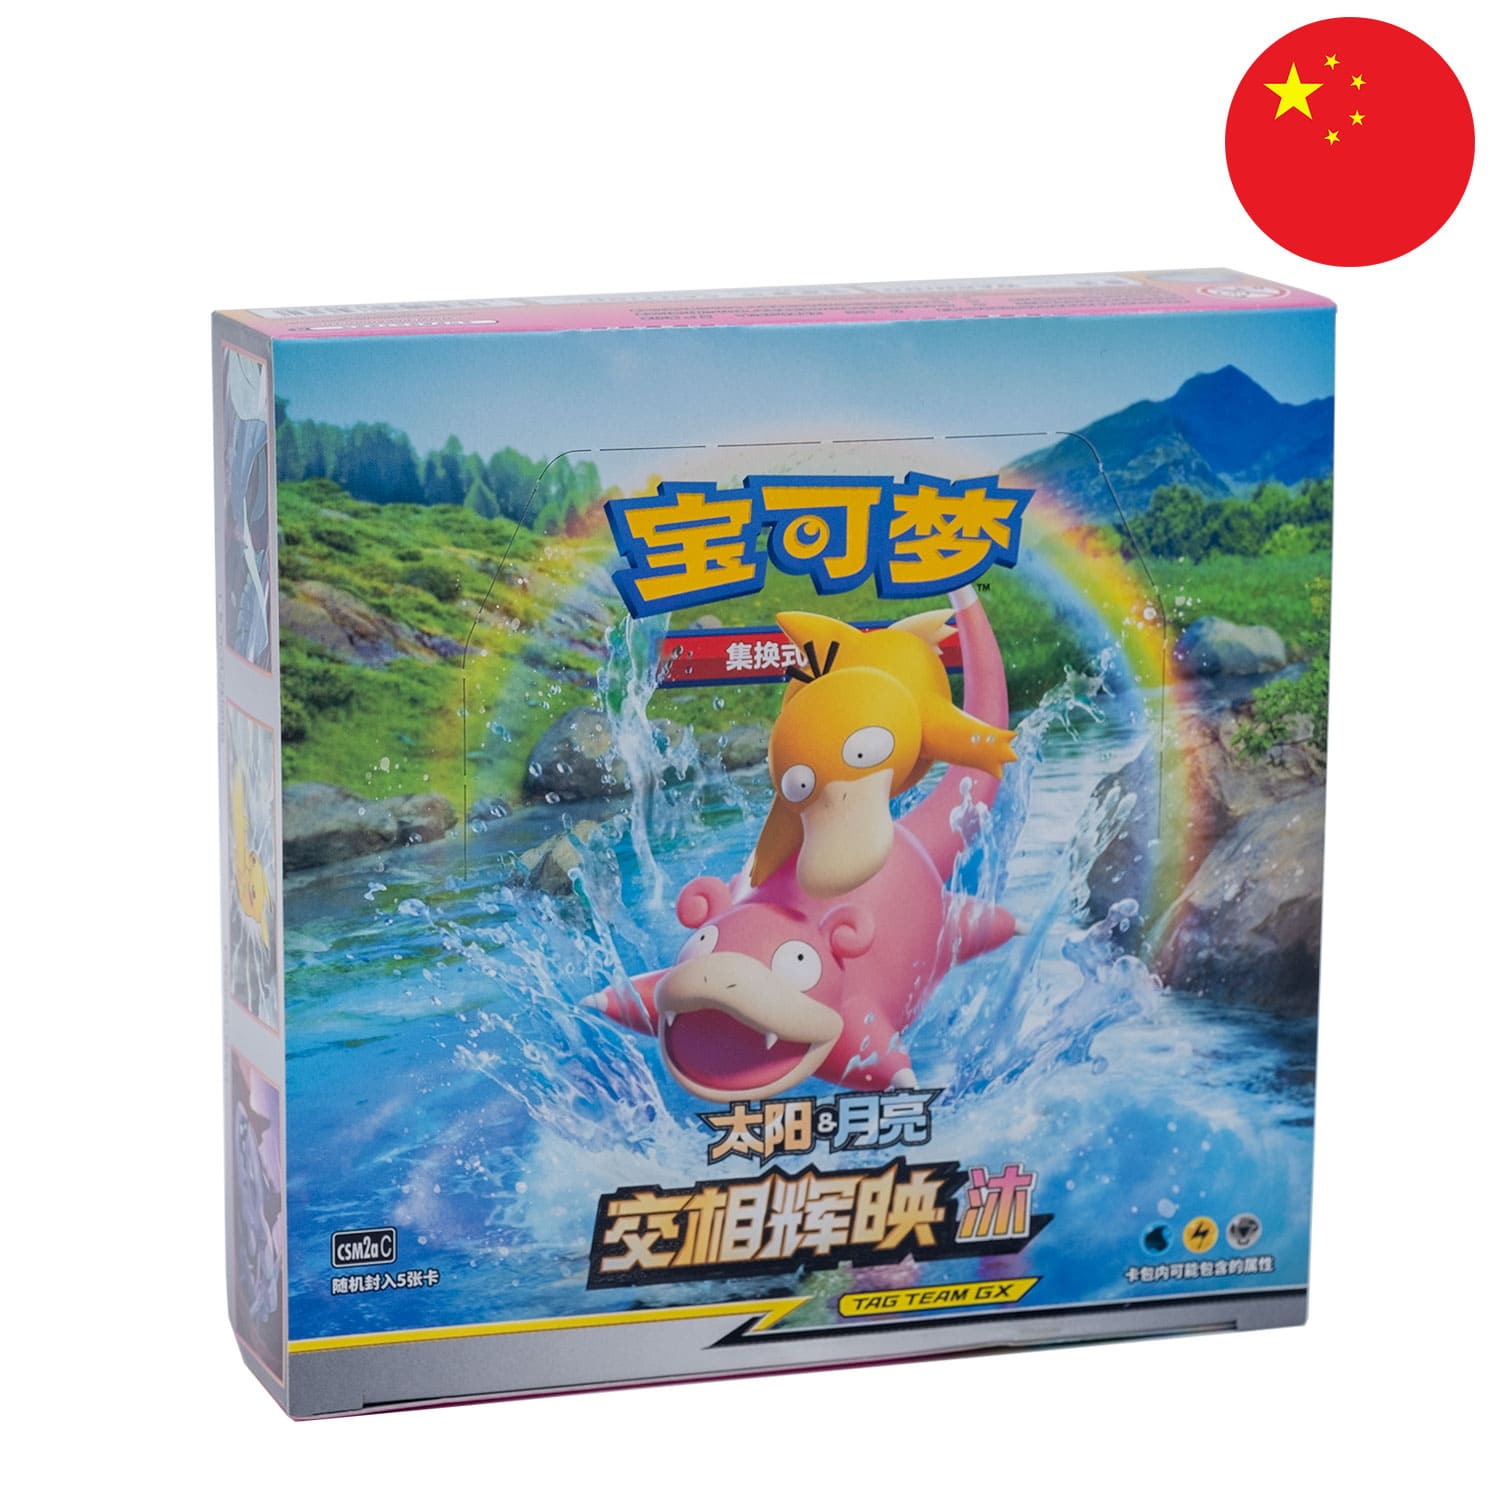 Das Tag Team GX Pokemon Display Shining Synergy: Shower, frontal&schräg als Hauptbild, mit der Flagge Chinas in der Ecke.